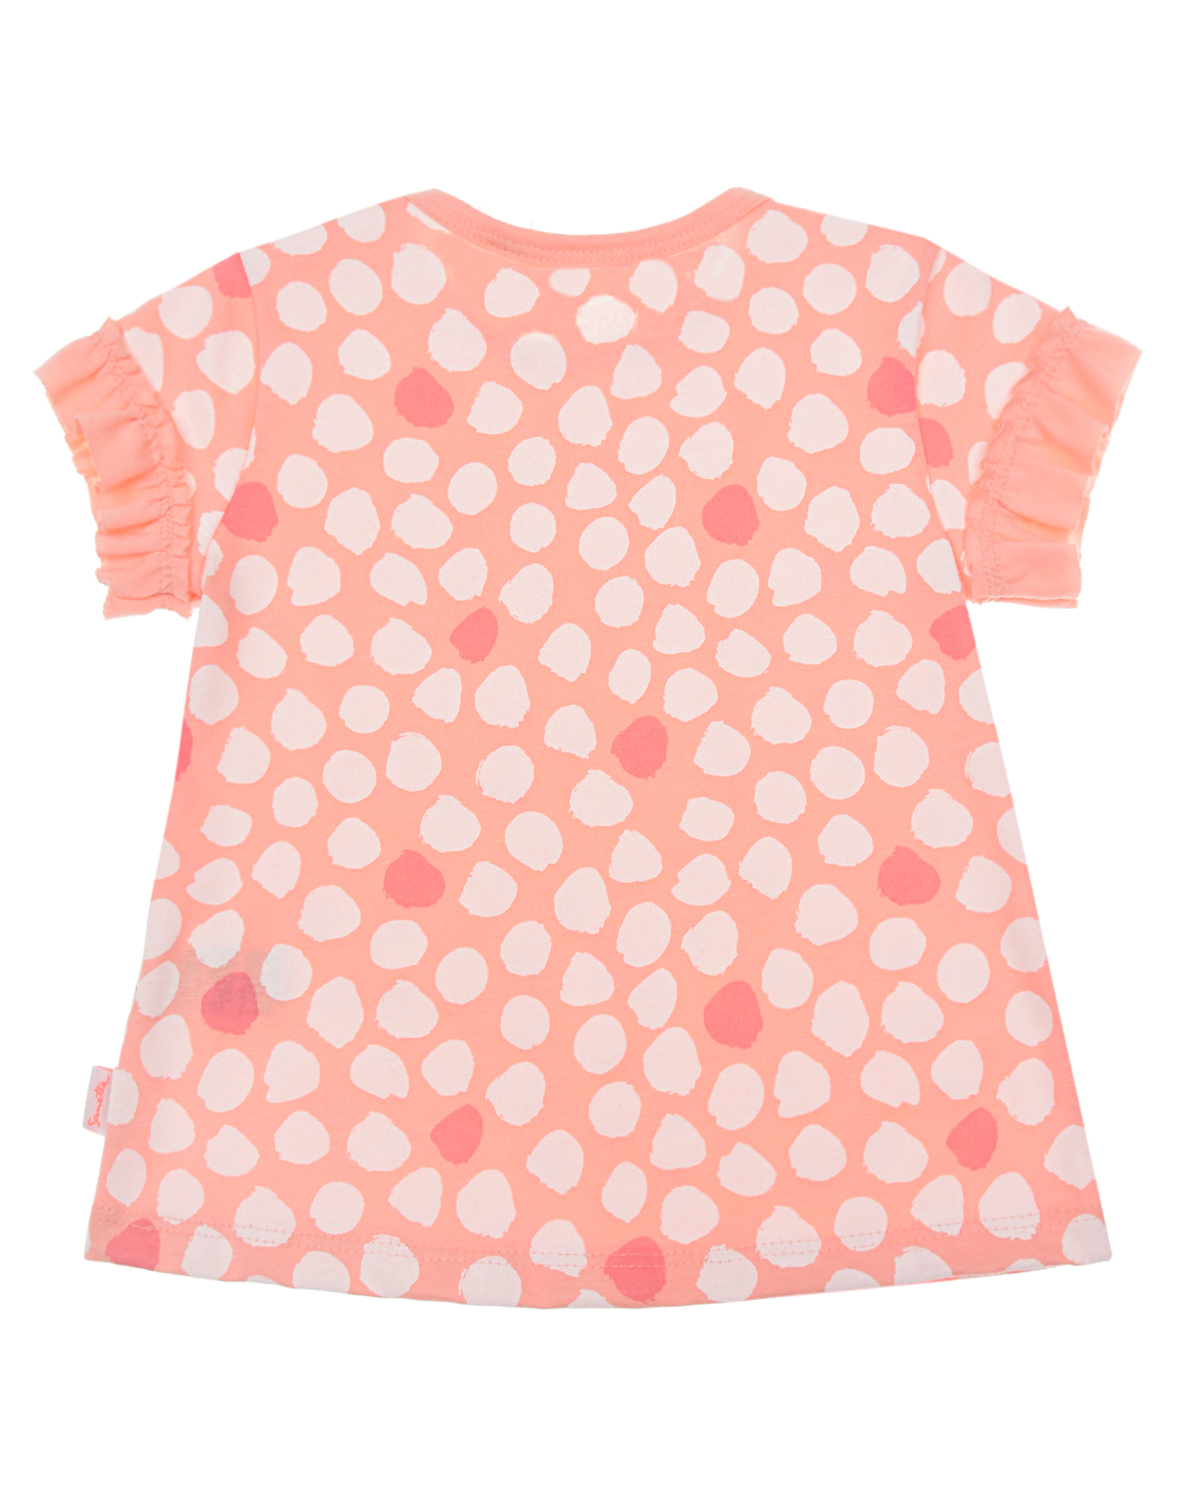 Футболка персикового цвета с принтом в горошек Sanetta Kidswear детская, размер 62 - фото 2